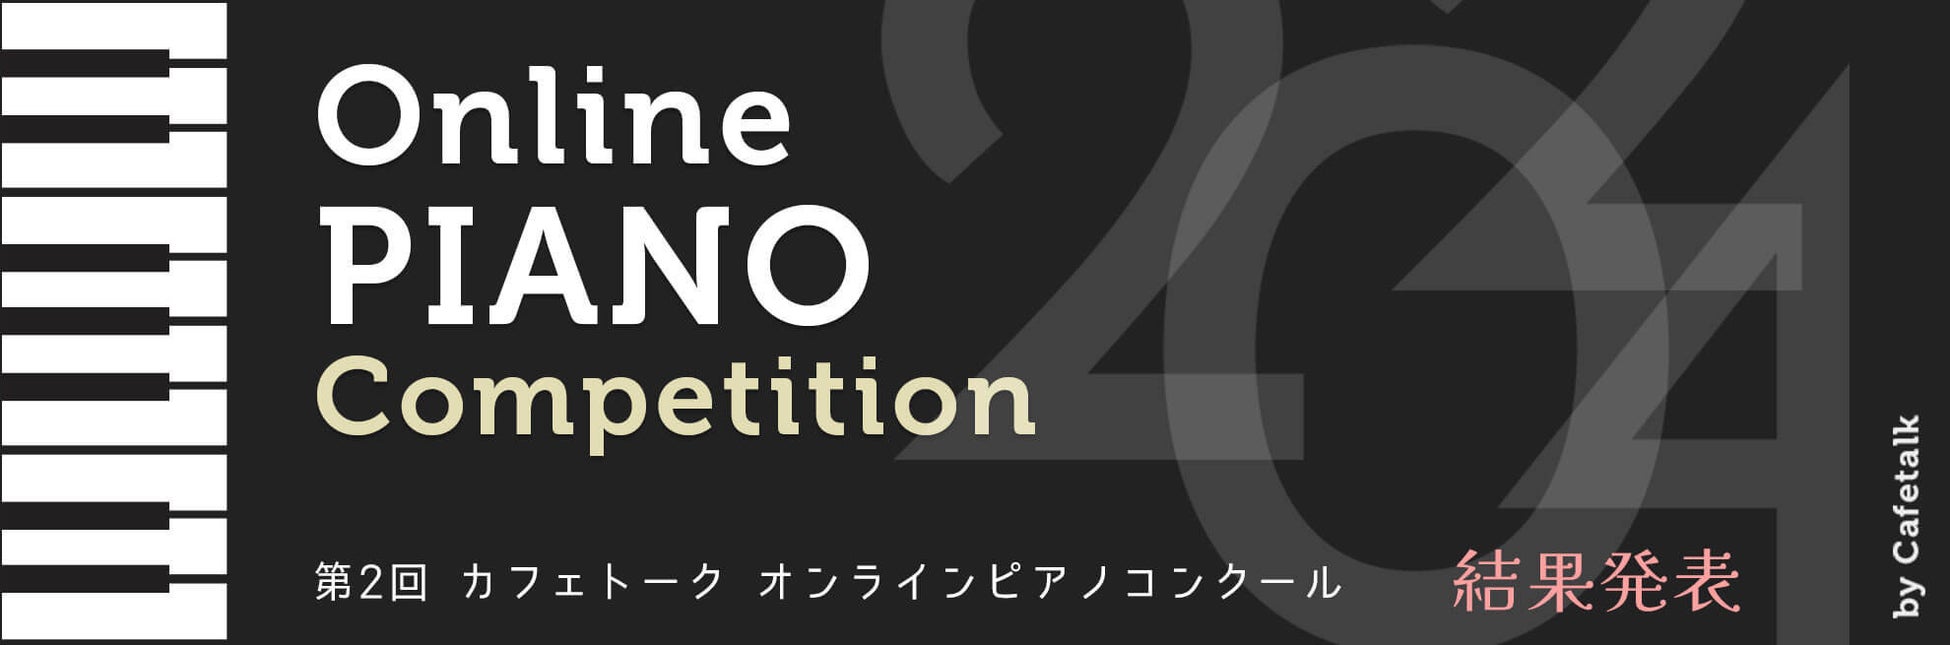 ピティナ特級 二次予選進出者26名を発表【国内最大規模のピアノコンクール】